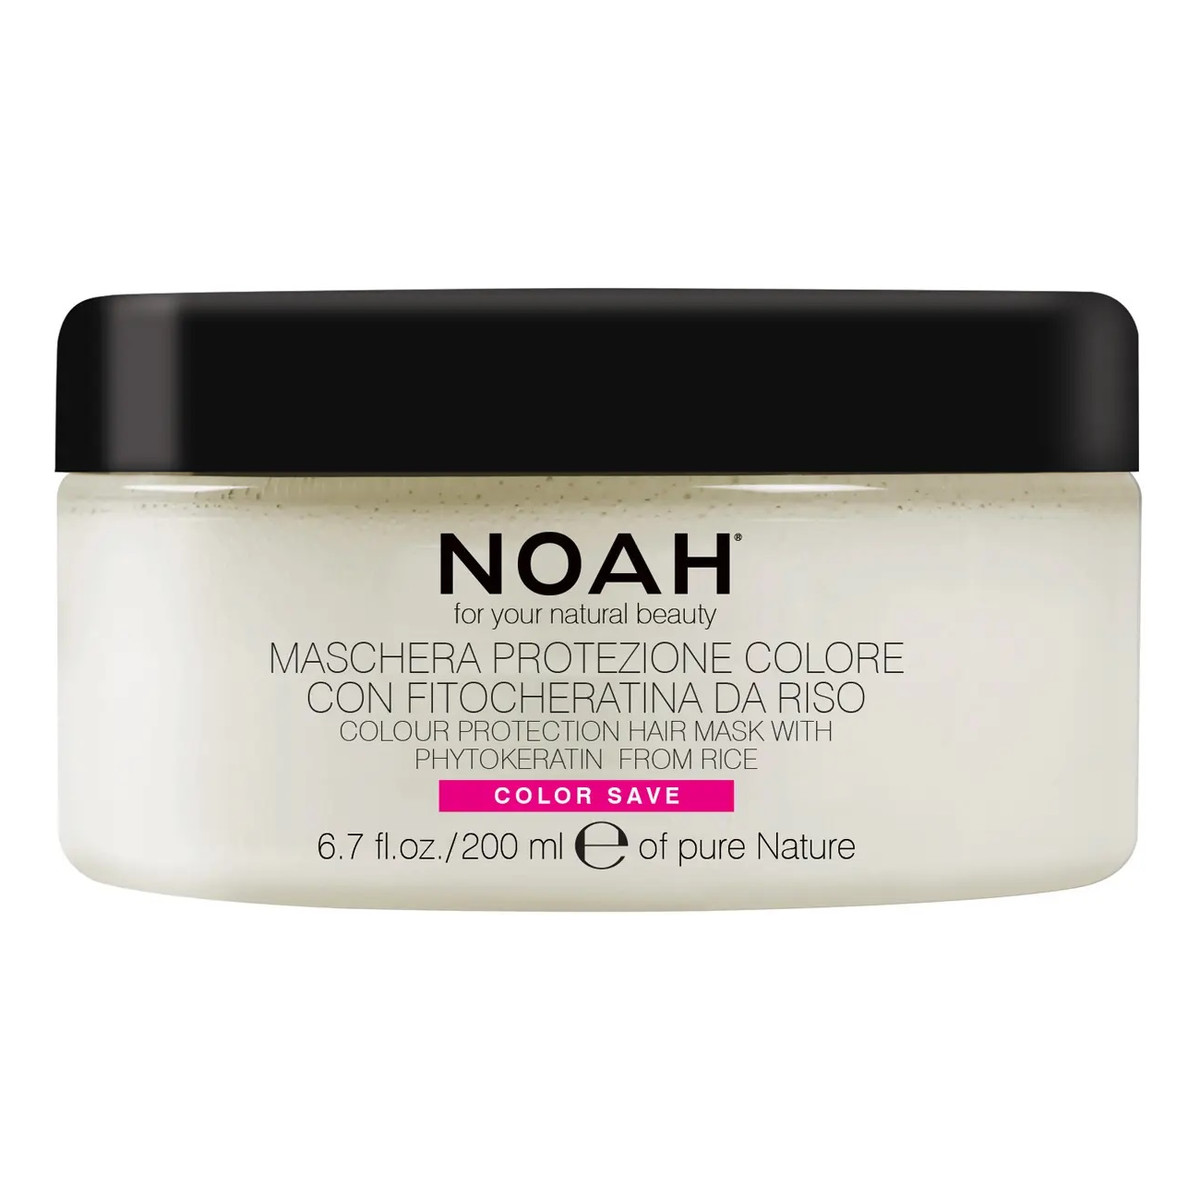 Noah For your natural beauty color protection hair mask 2.4 maska do włosów chroniąca kolor 200ml